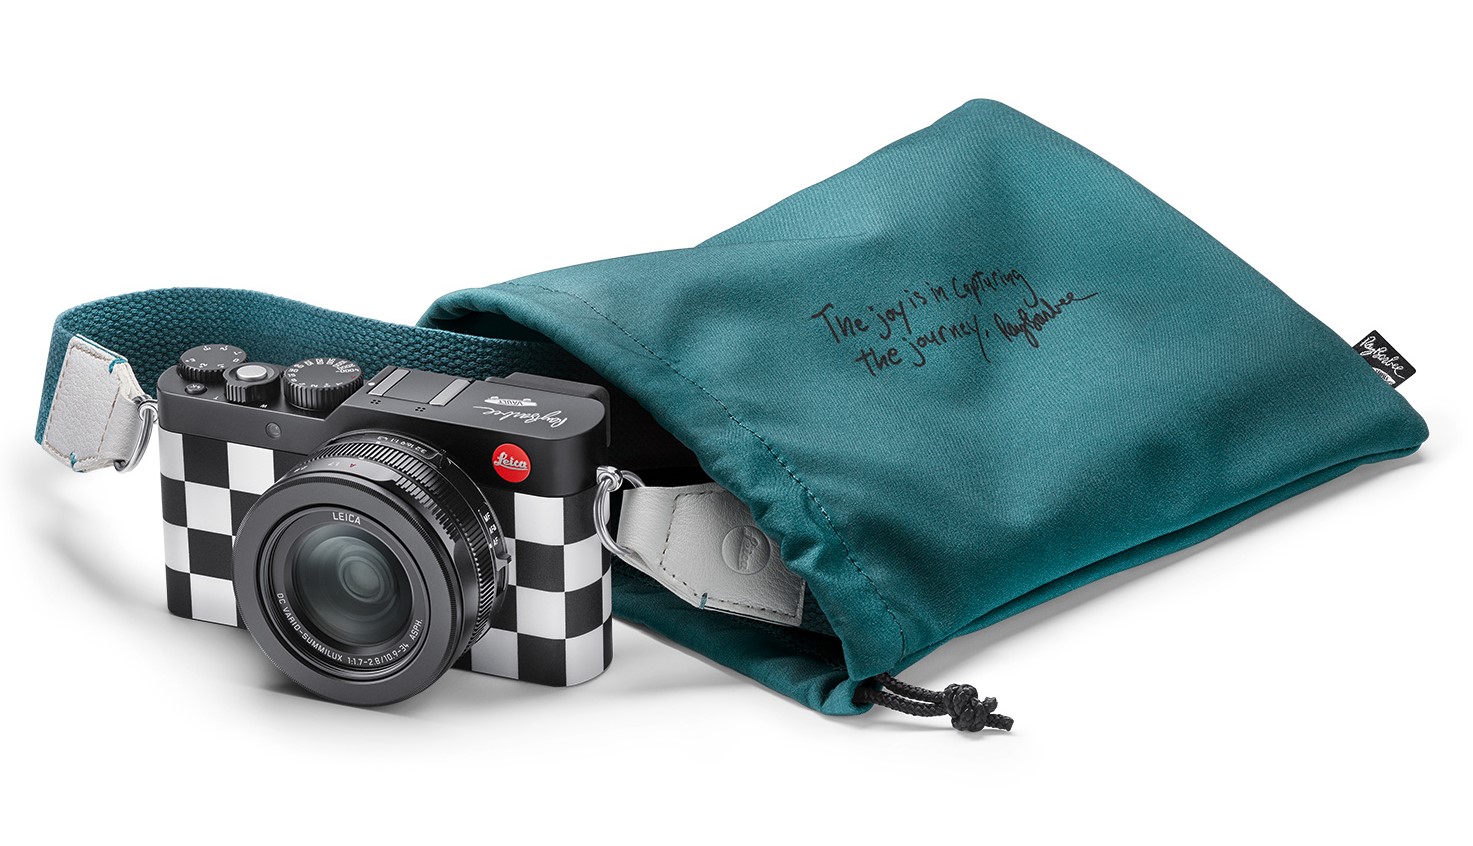 Black Leica D-Lux 7 camera announced - Leica Rumors